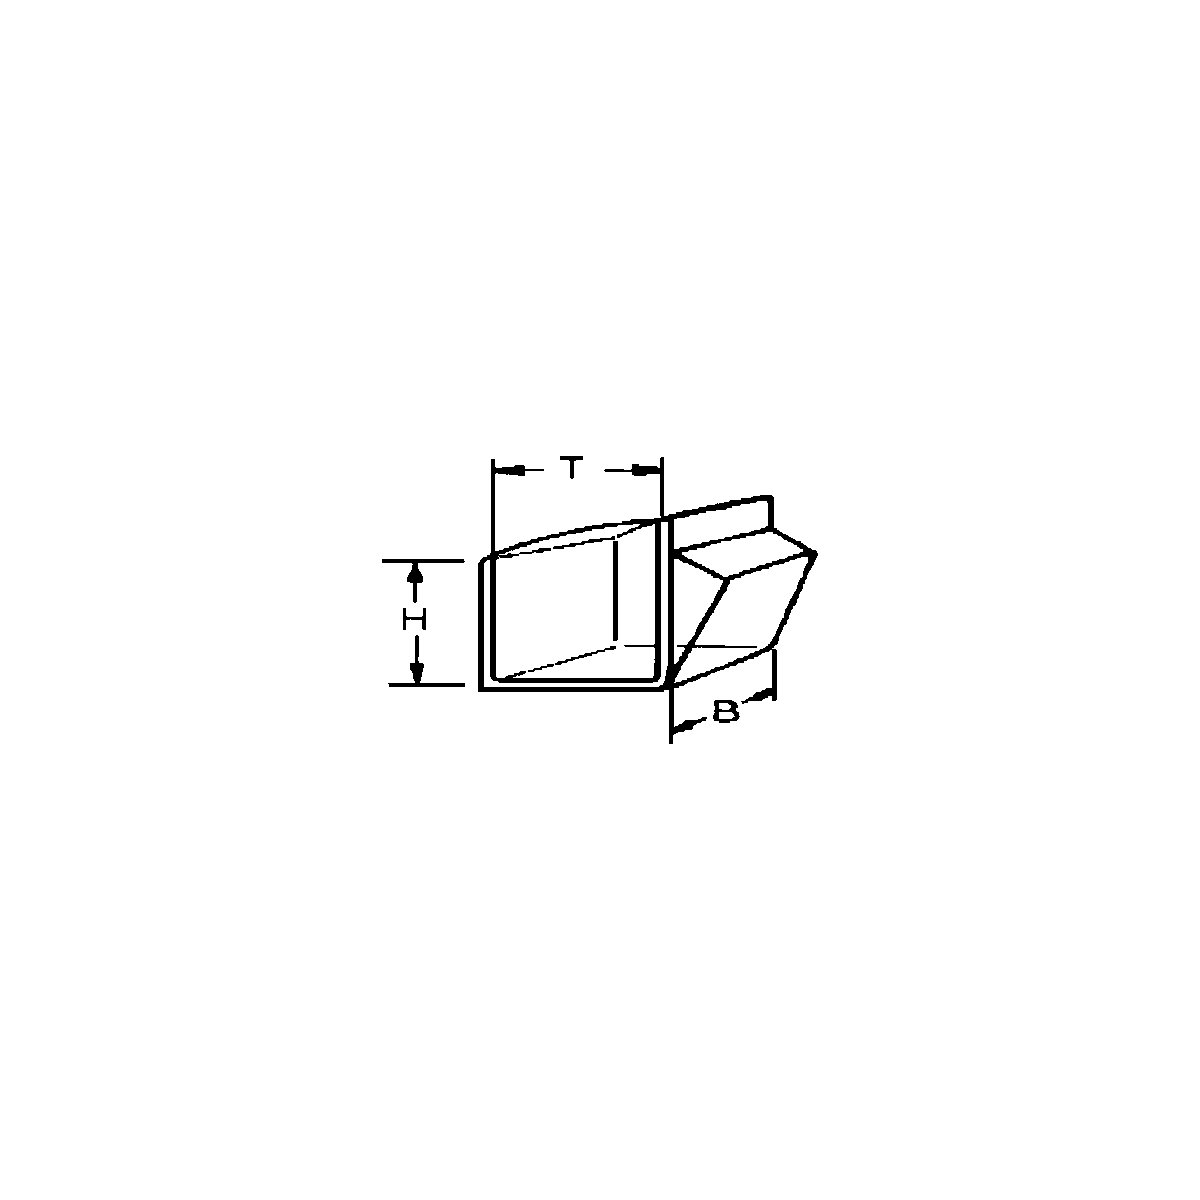 Sistem de depozitare cu cutie cu clapetă (Imagine produs 7)-6